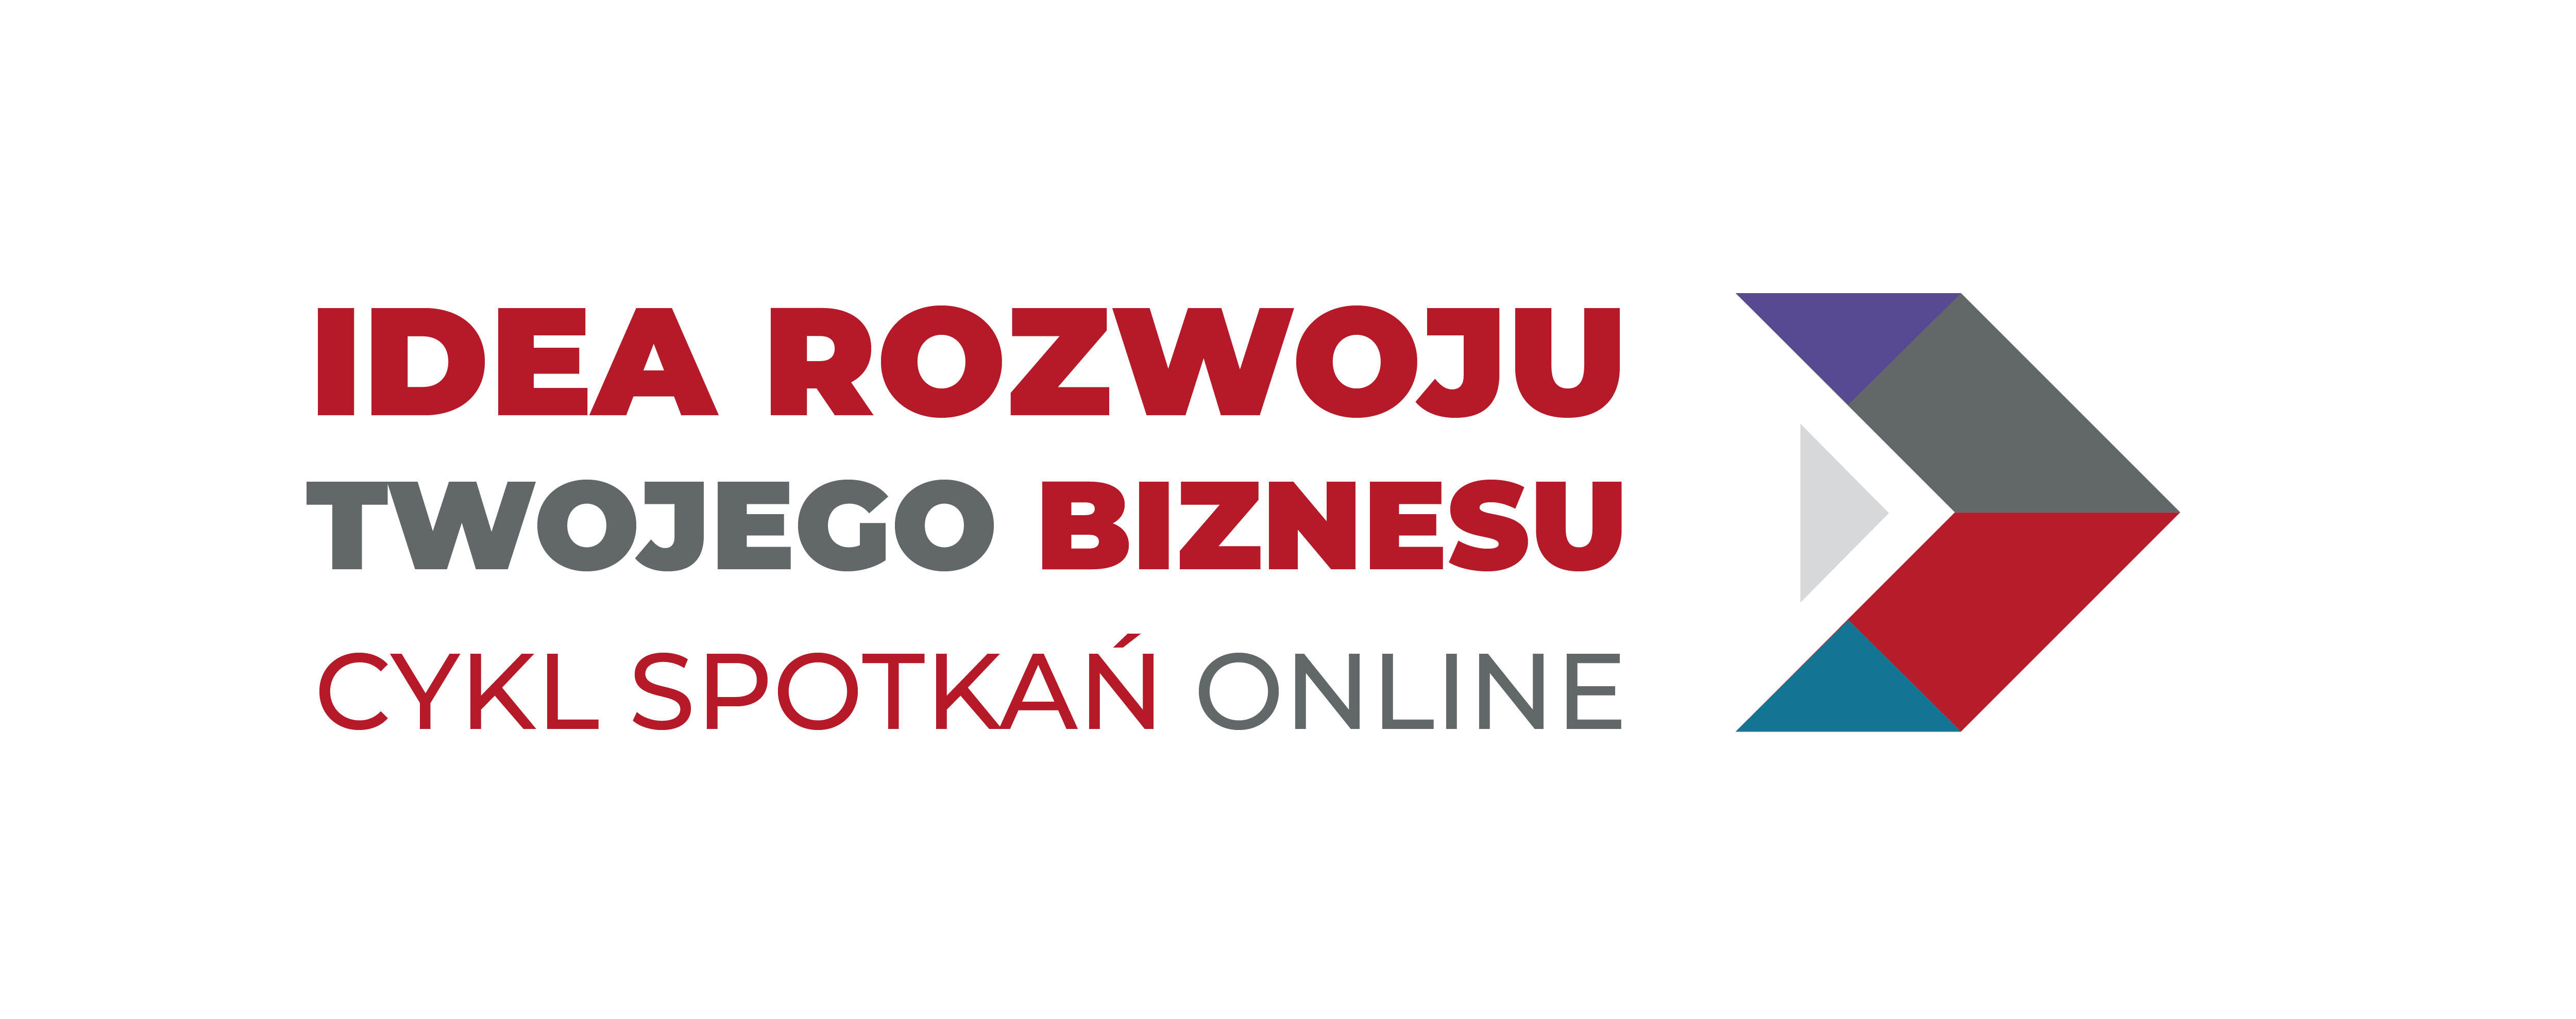 #idearozwojubiznesu – cykl spotkań online